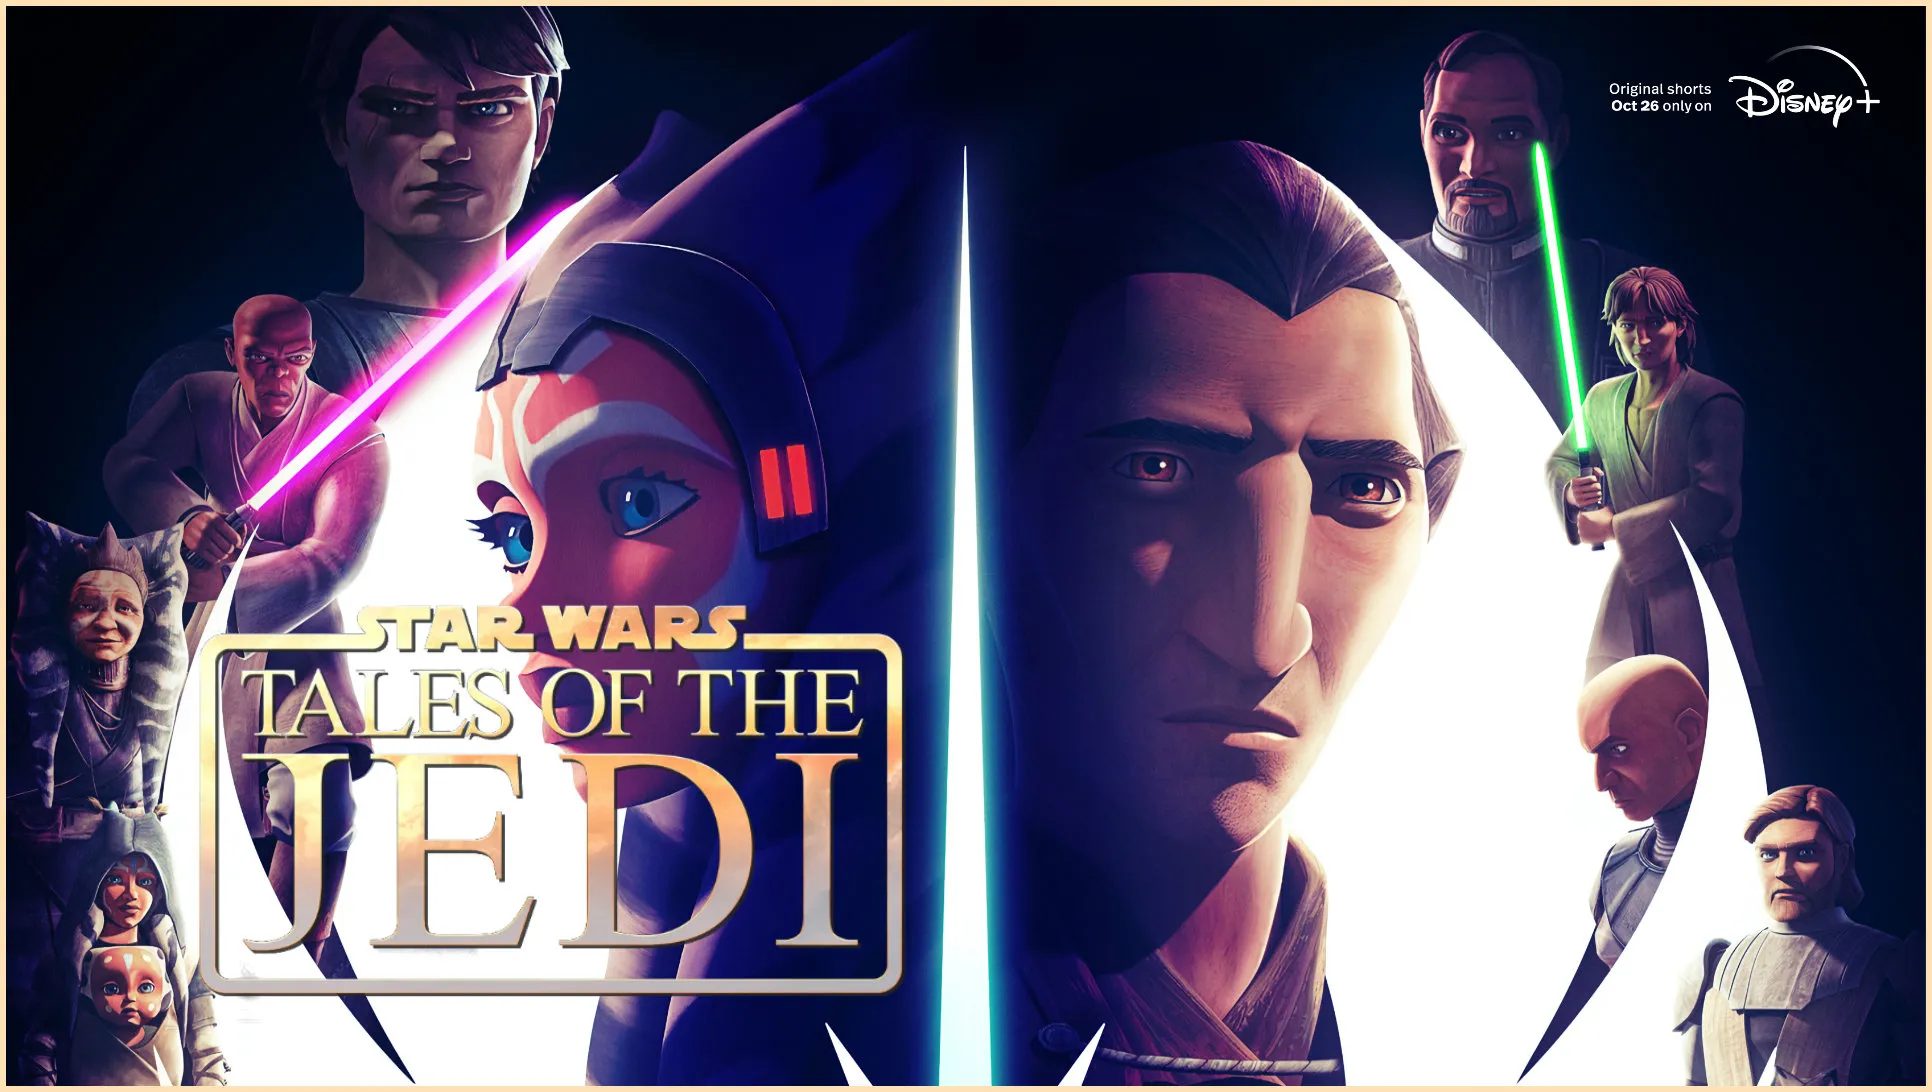 Câu Chuyện Về Jedi-Star Wars: Tales of the Jedi